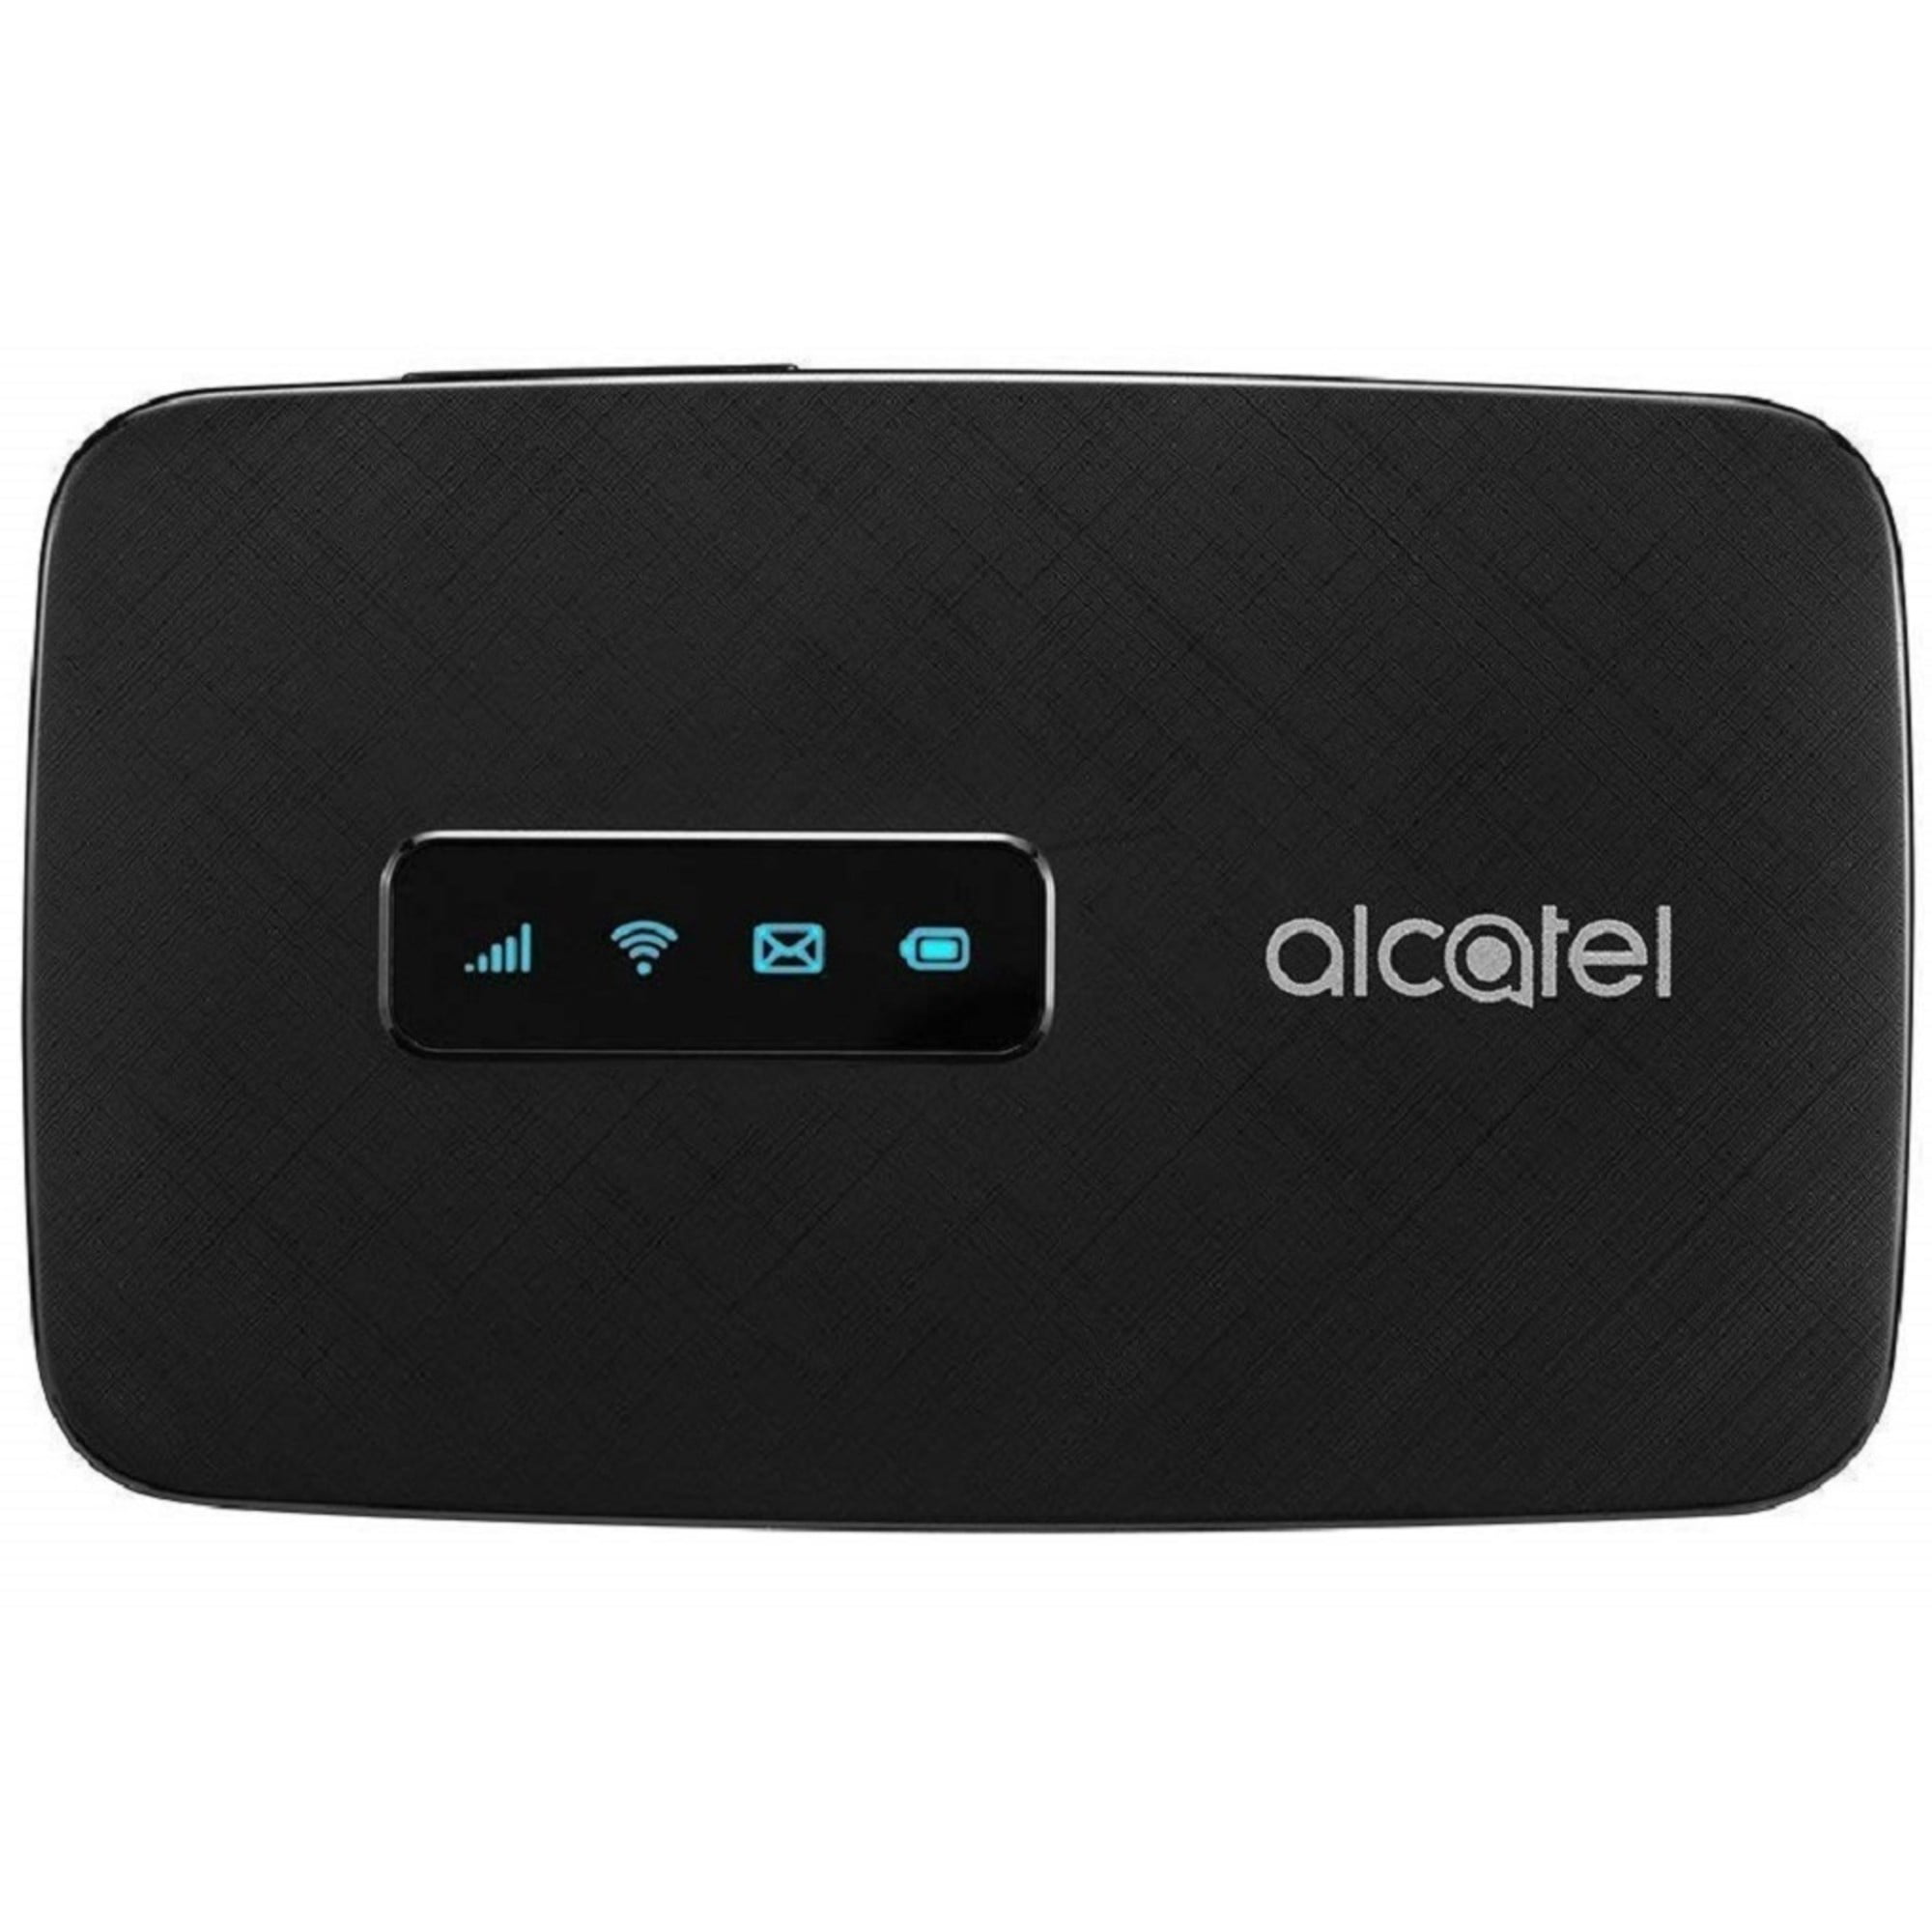 Alcatel 4g. Alcatel link Zone mw40v. Роутер Alcatel LINKZONE mw40v. Alcatel link Zone 2g/3g/4g mw40v. Модем 2g/3g/4g Alcatel link Zone USB.